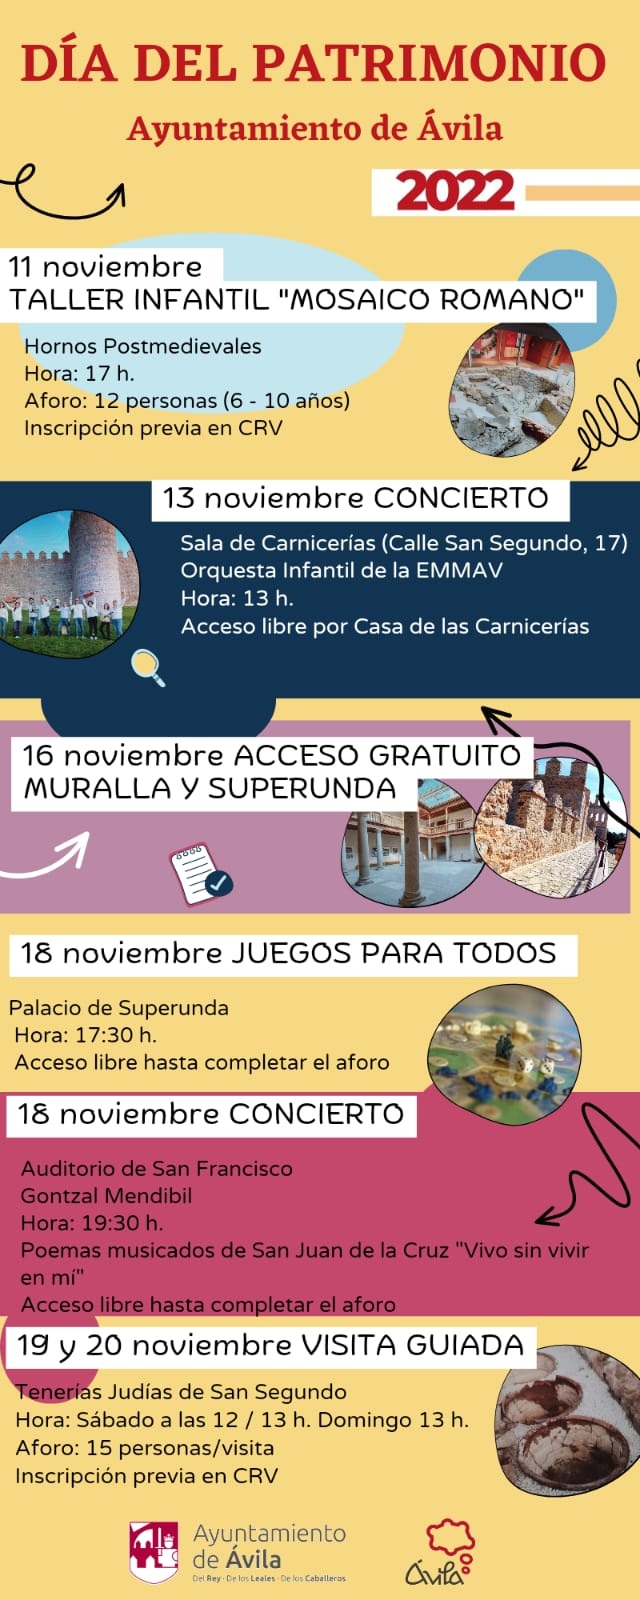 Día del patrimonio. Taller "Juegos para todos" Ávila Turismo